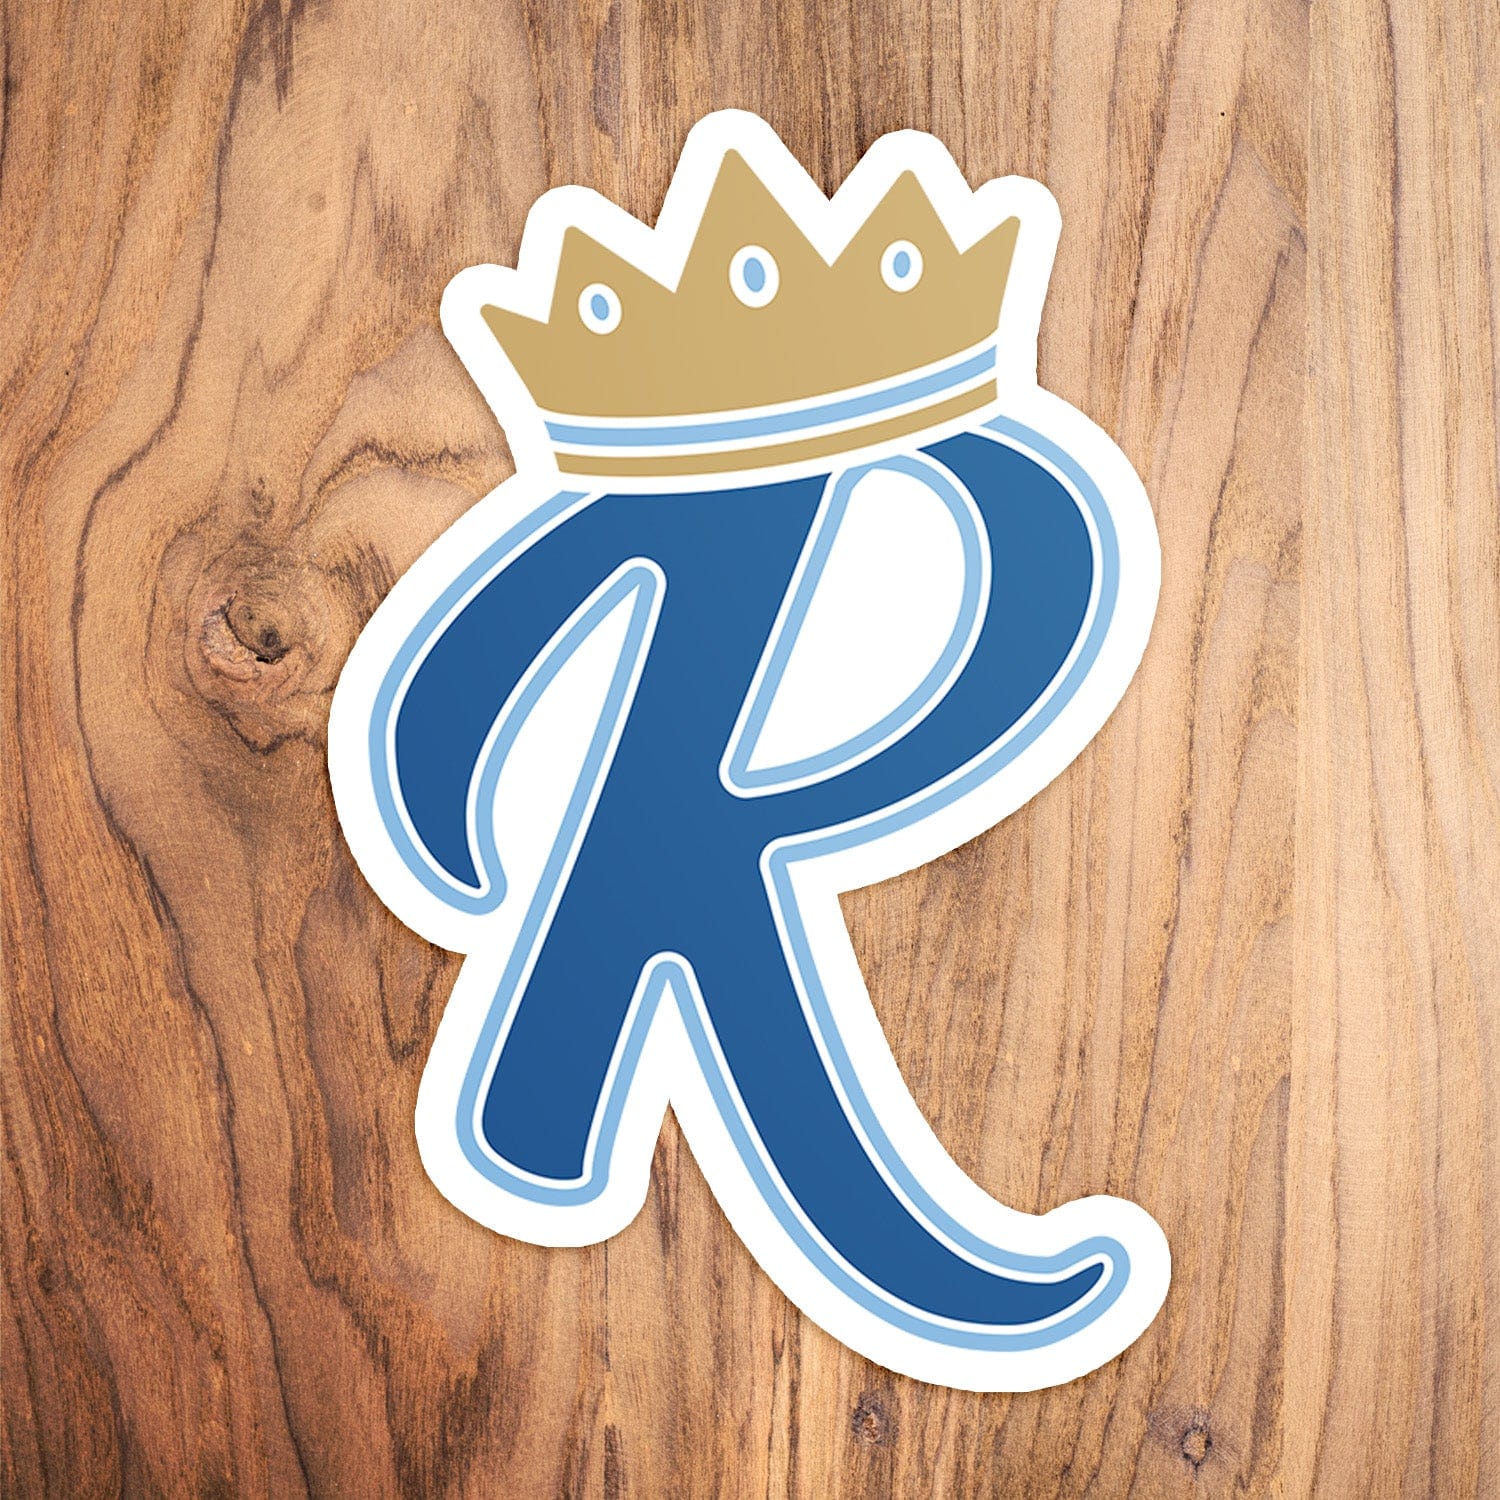 Crown R - Kansas City Royals Vinyl Die-Cut Decal Sticker